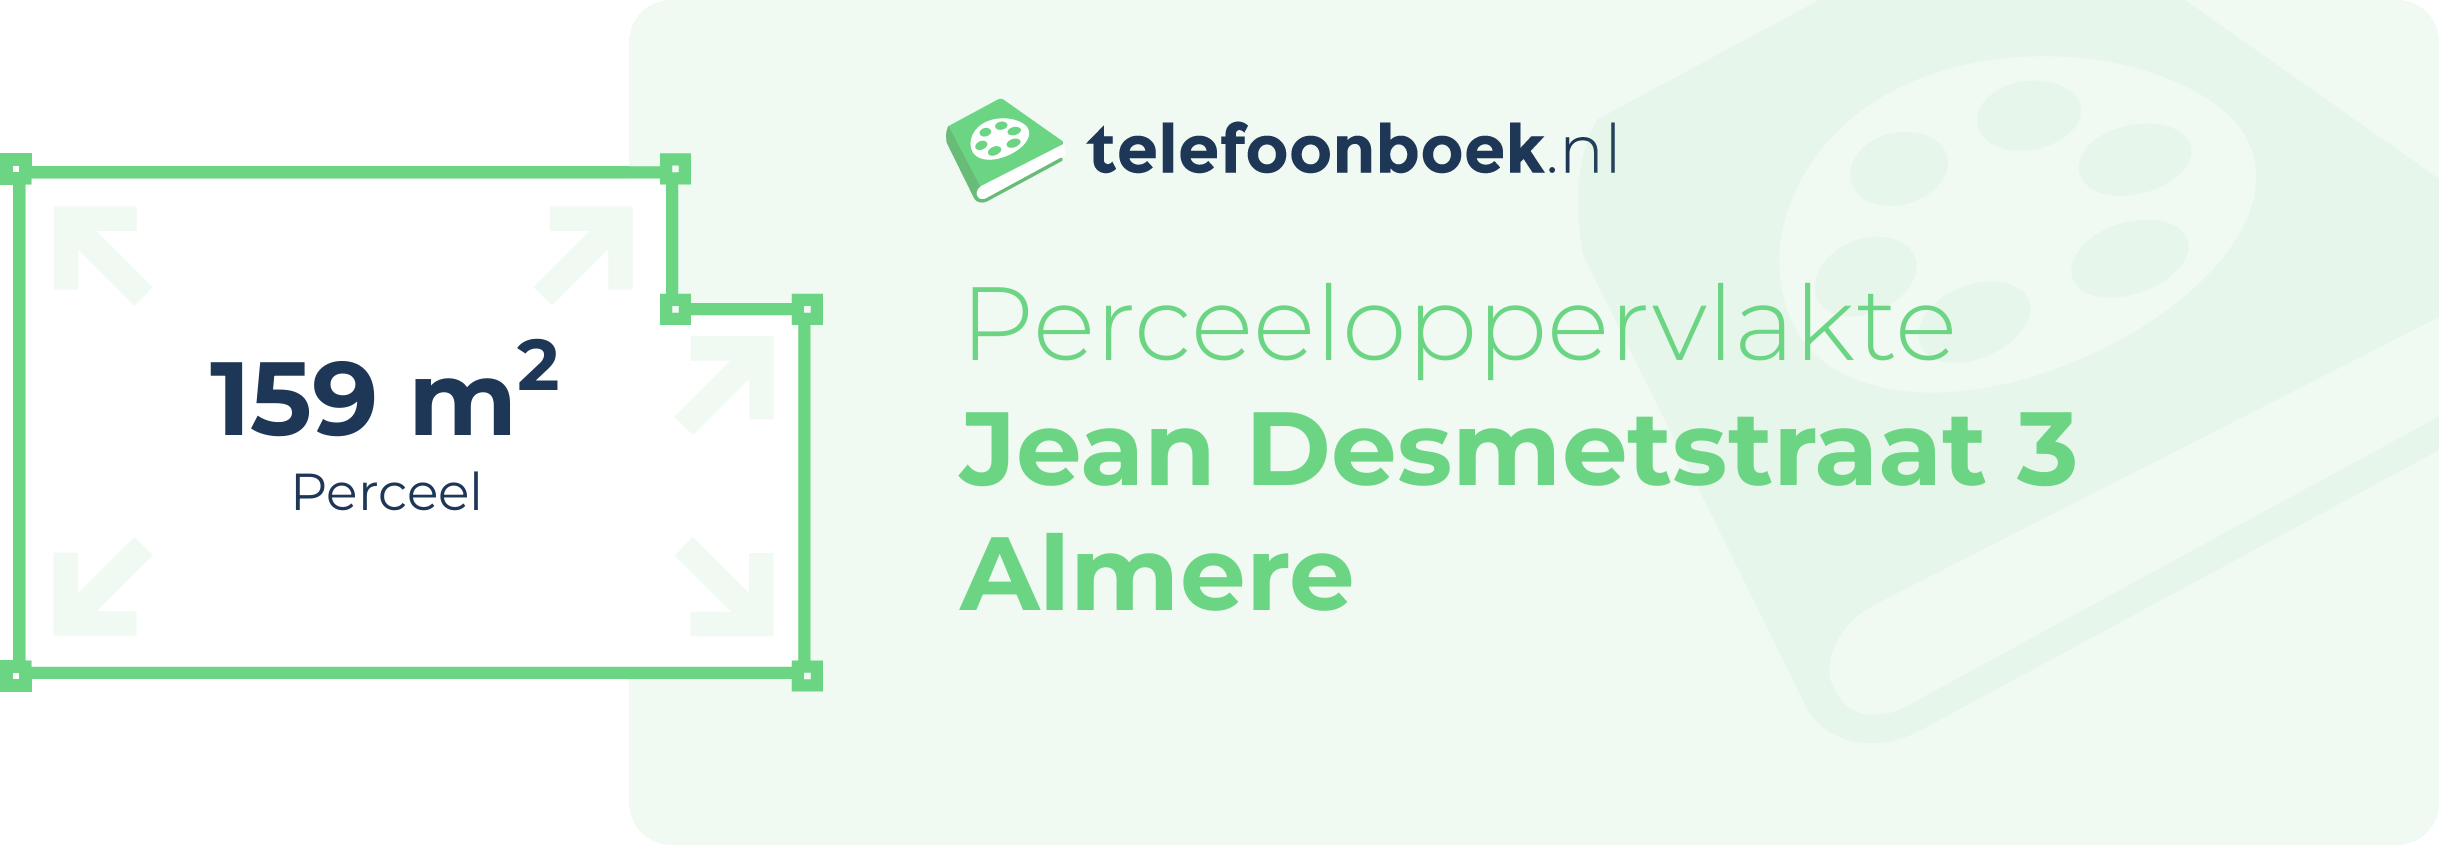 Perceeloppervlakte Jean Desmetstraat 3 Almere